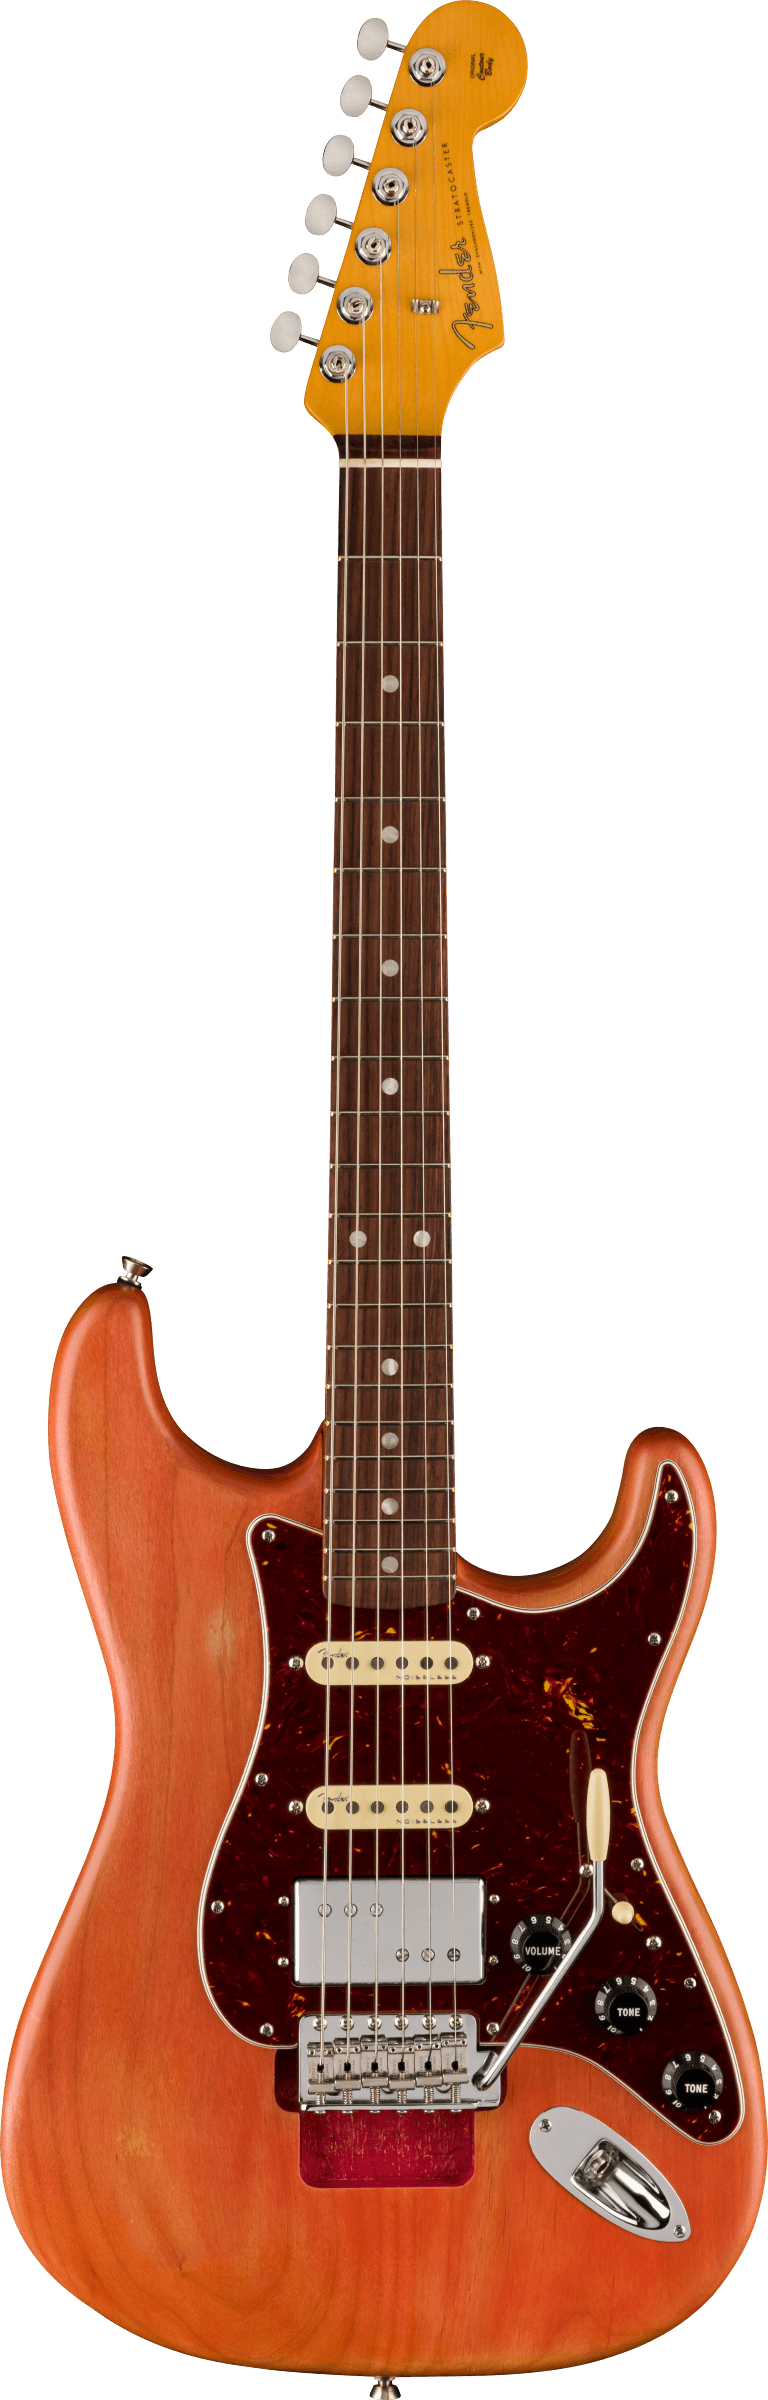 Michael Landau Coma Stratocaster Coma Red